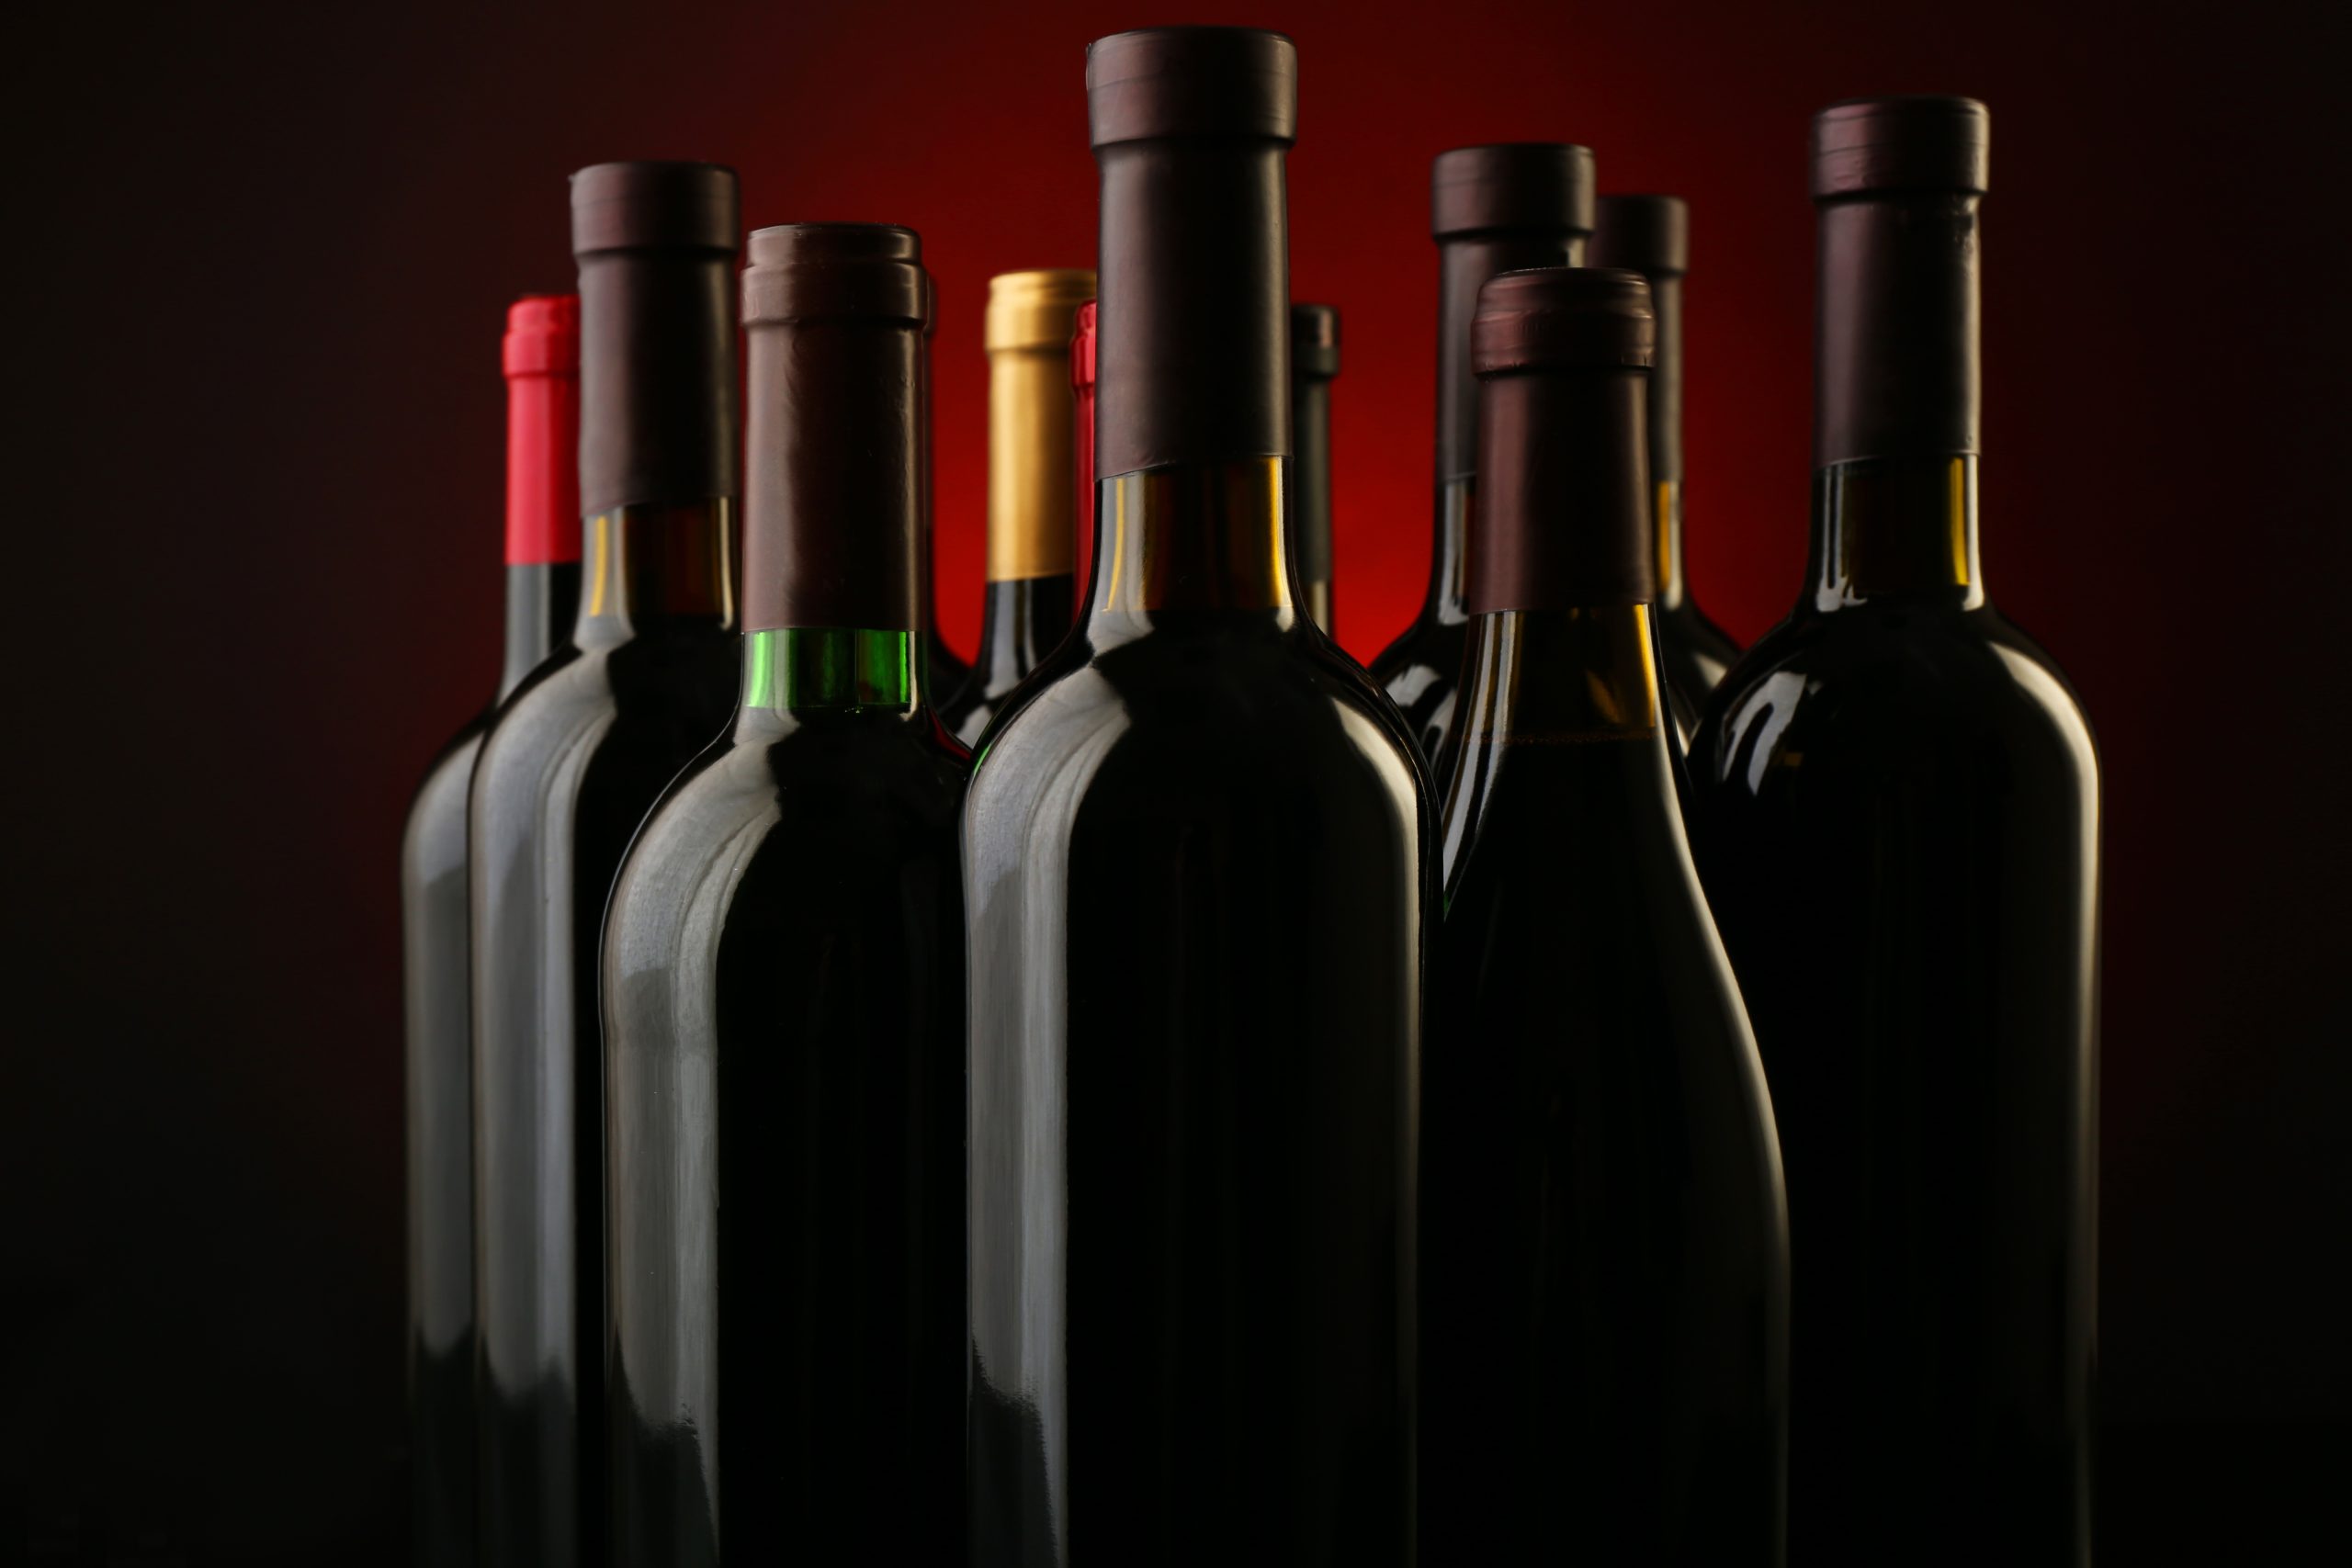 Come scegliere la bottiglia giusta per il tuo vino: i consigli di Polsinelli